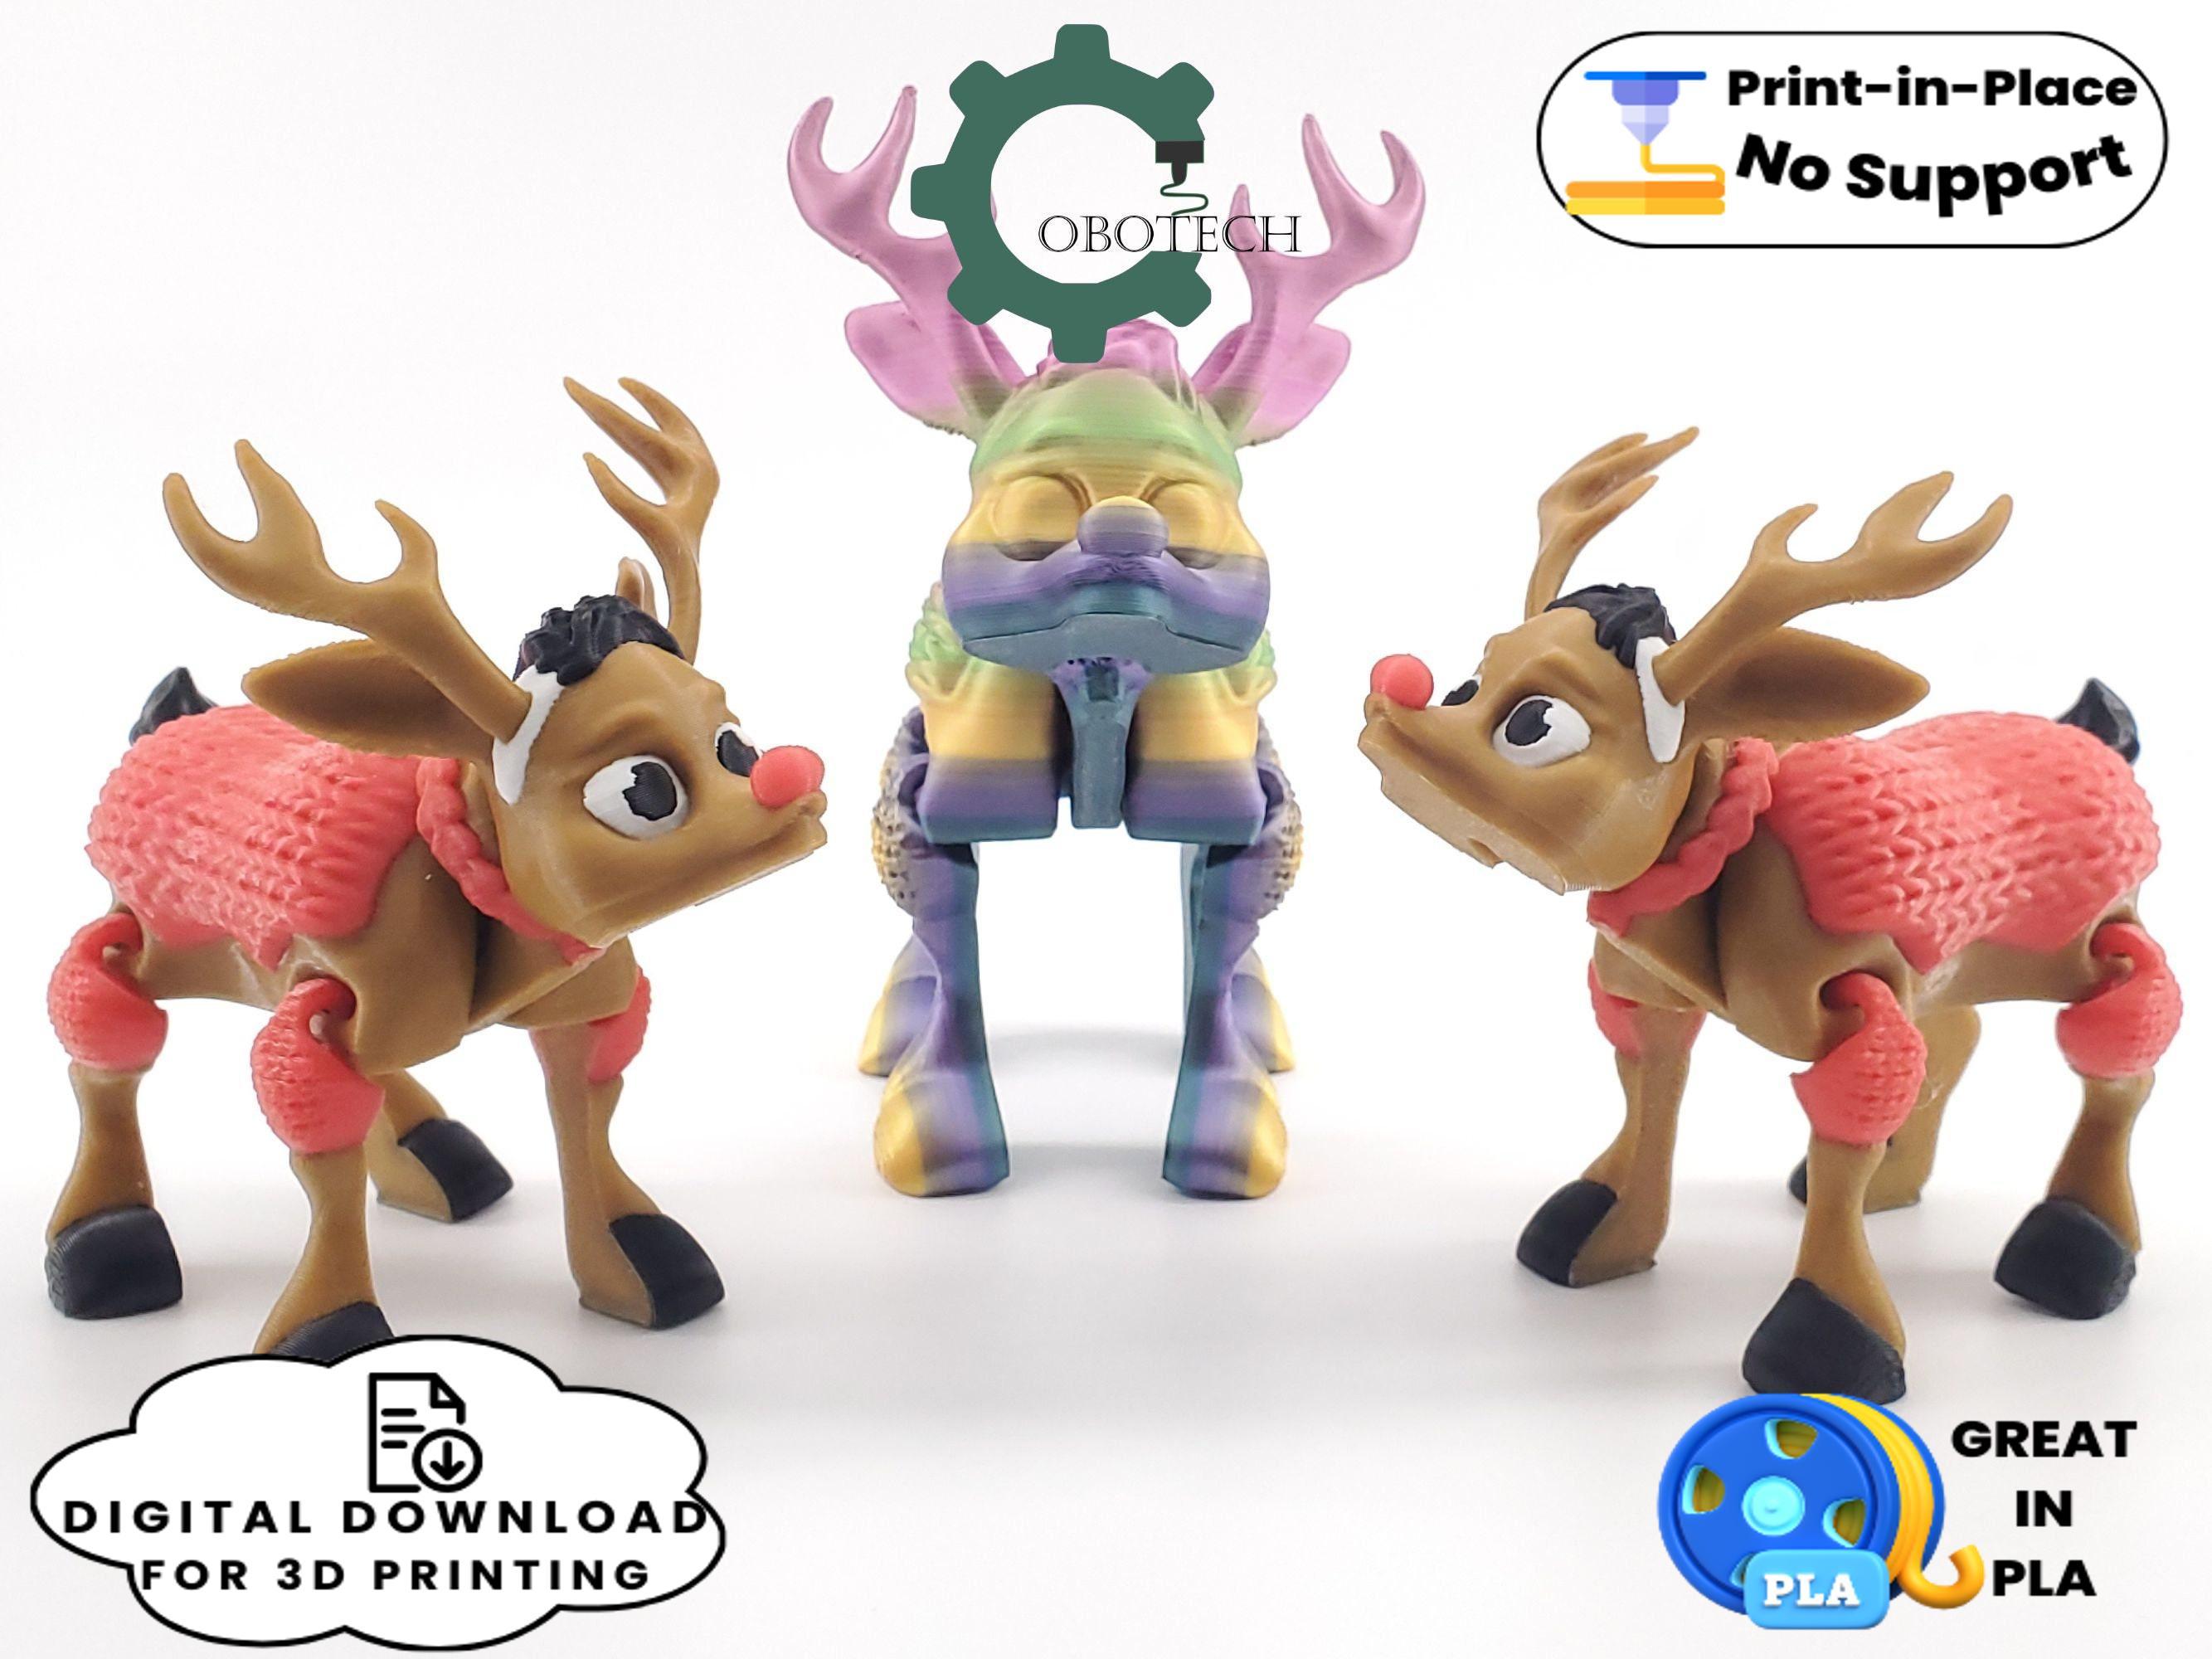 Cobotech Articulated Crochet Deer 3d model